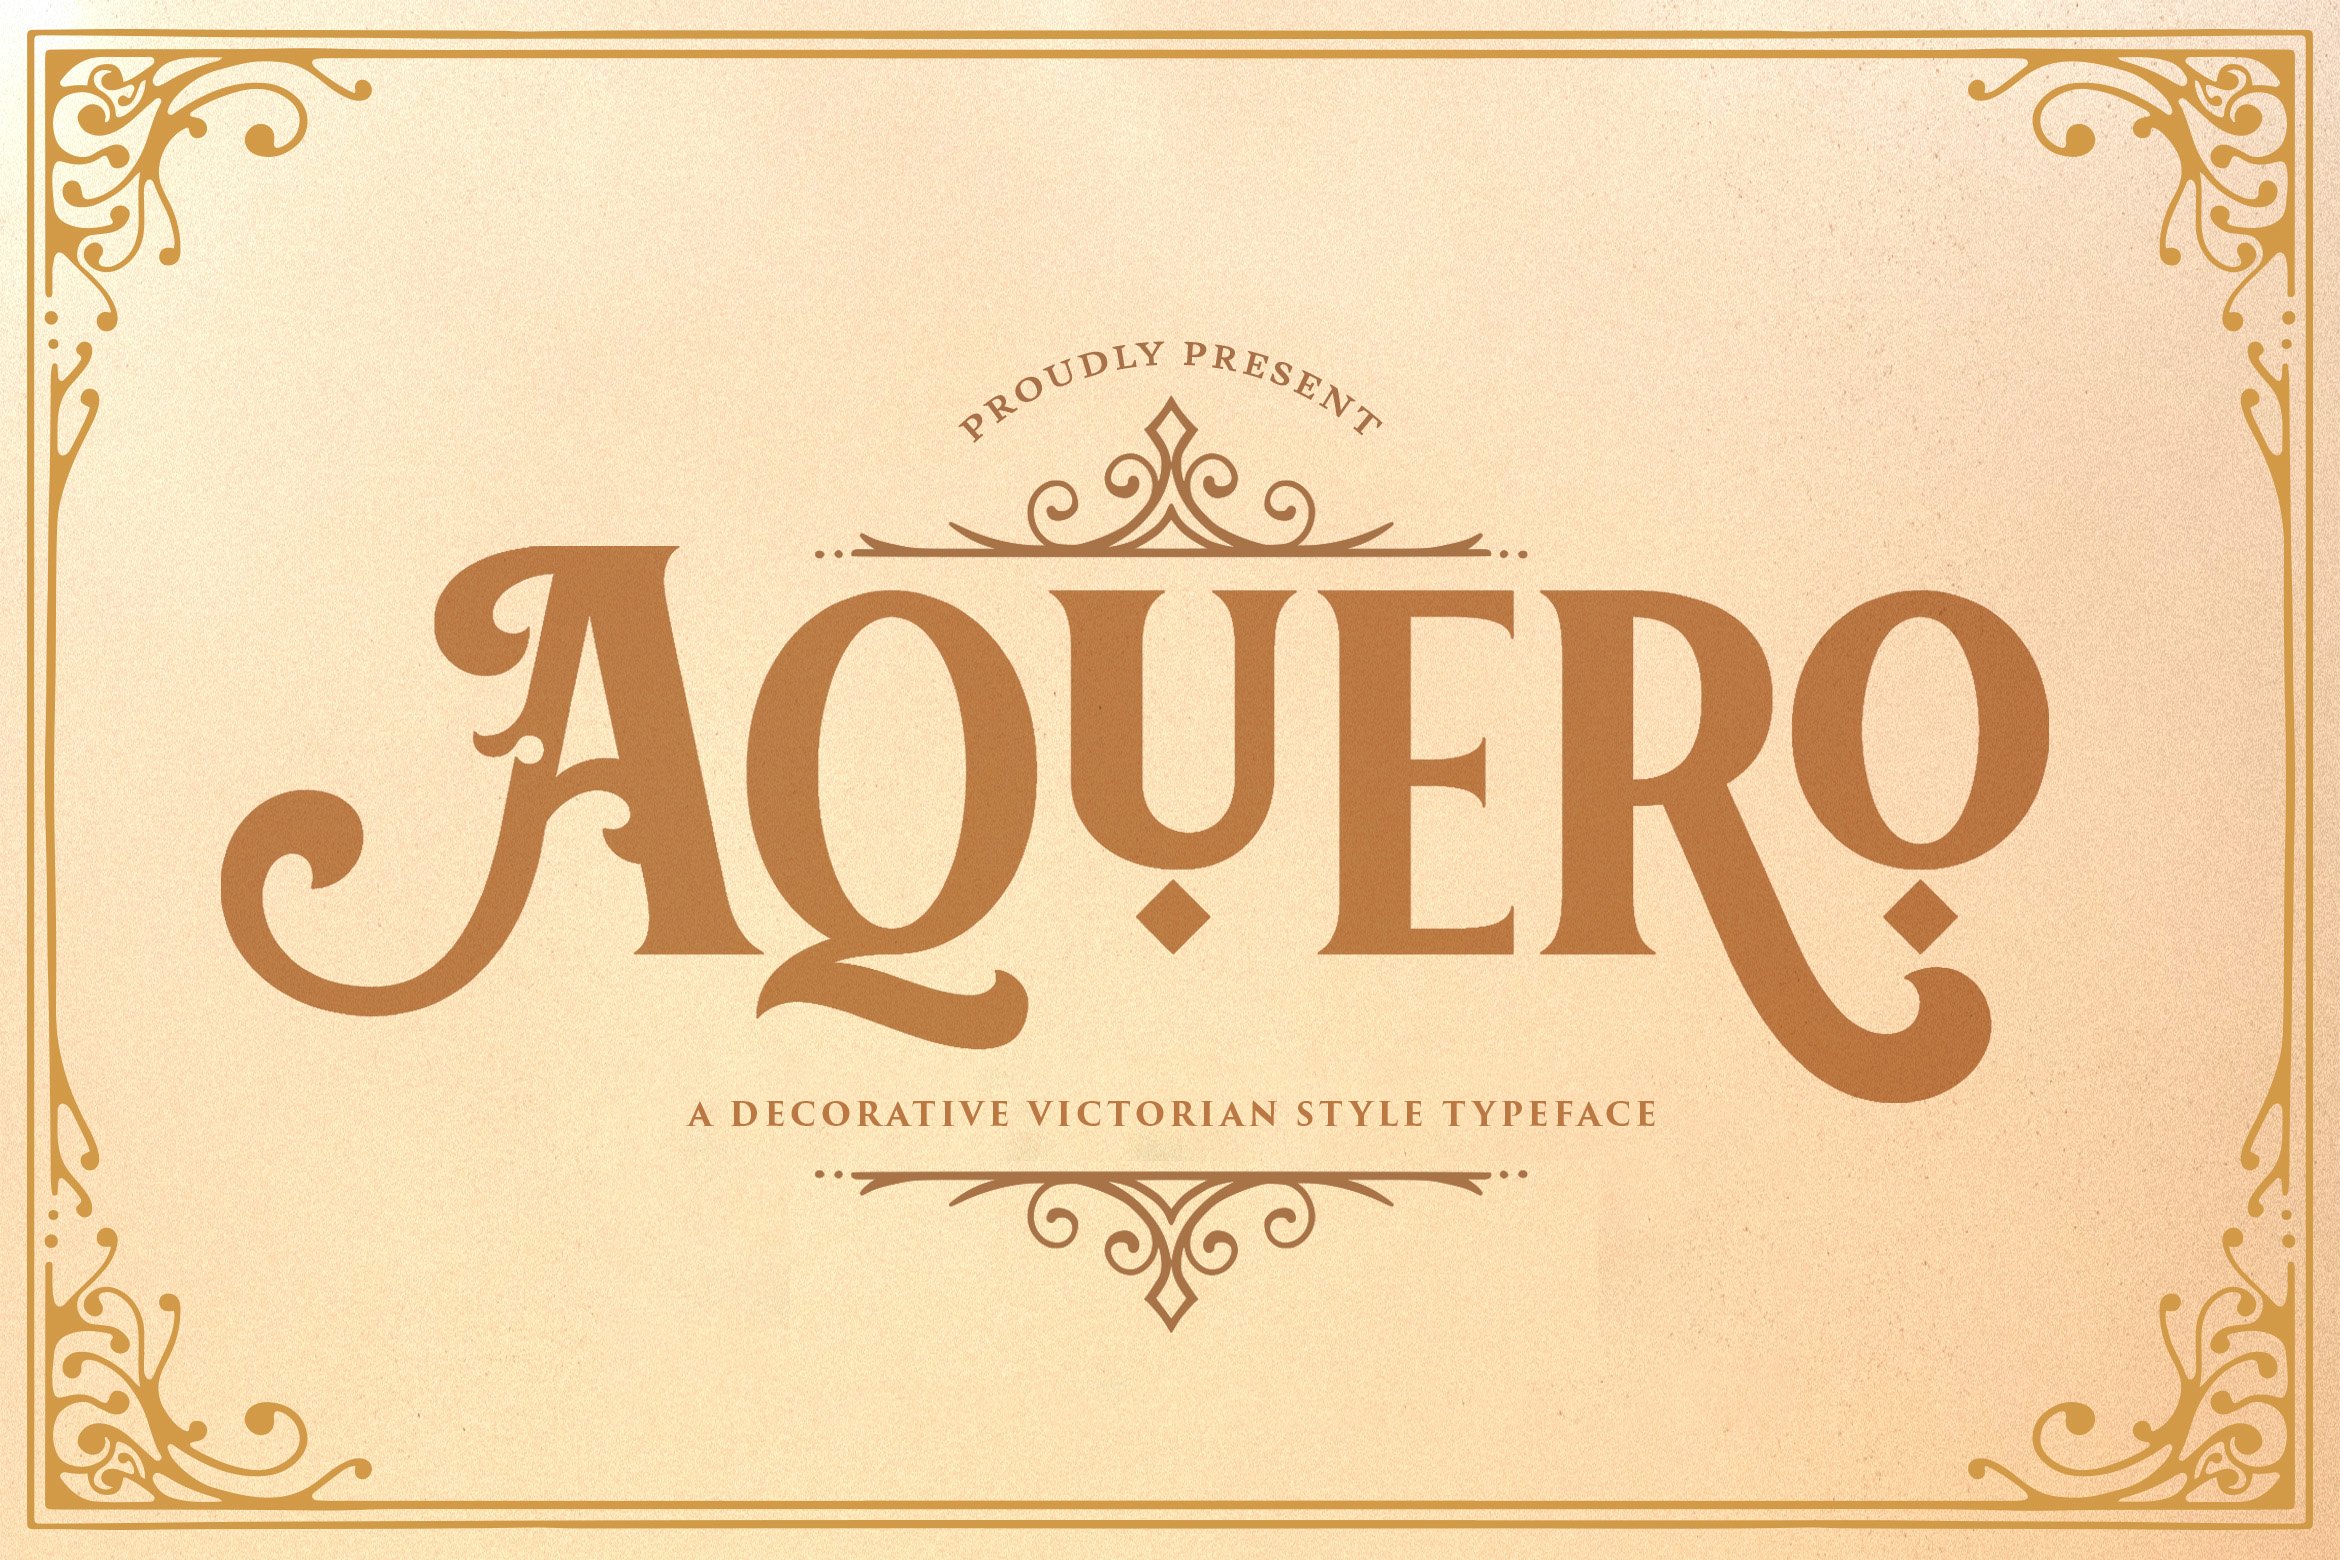 Aquero - Victorian Style Font cover image.